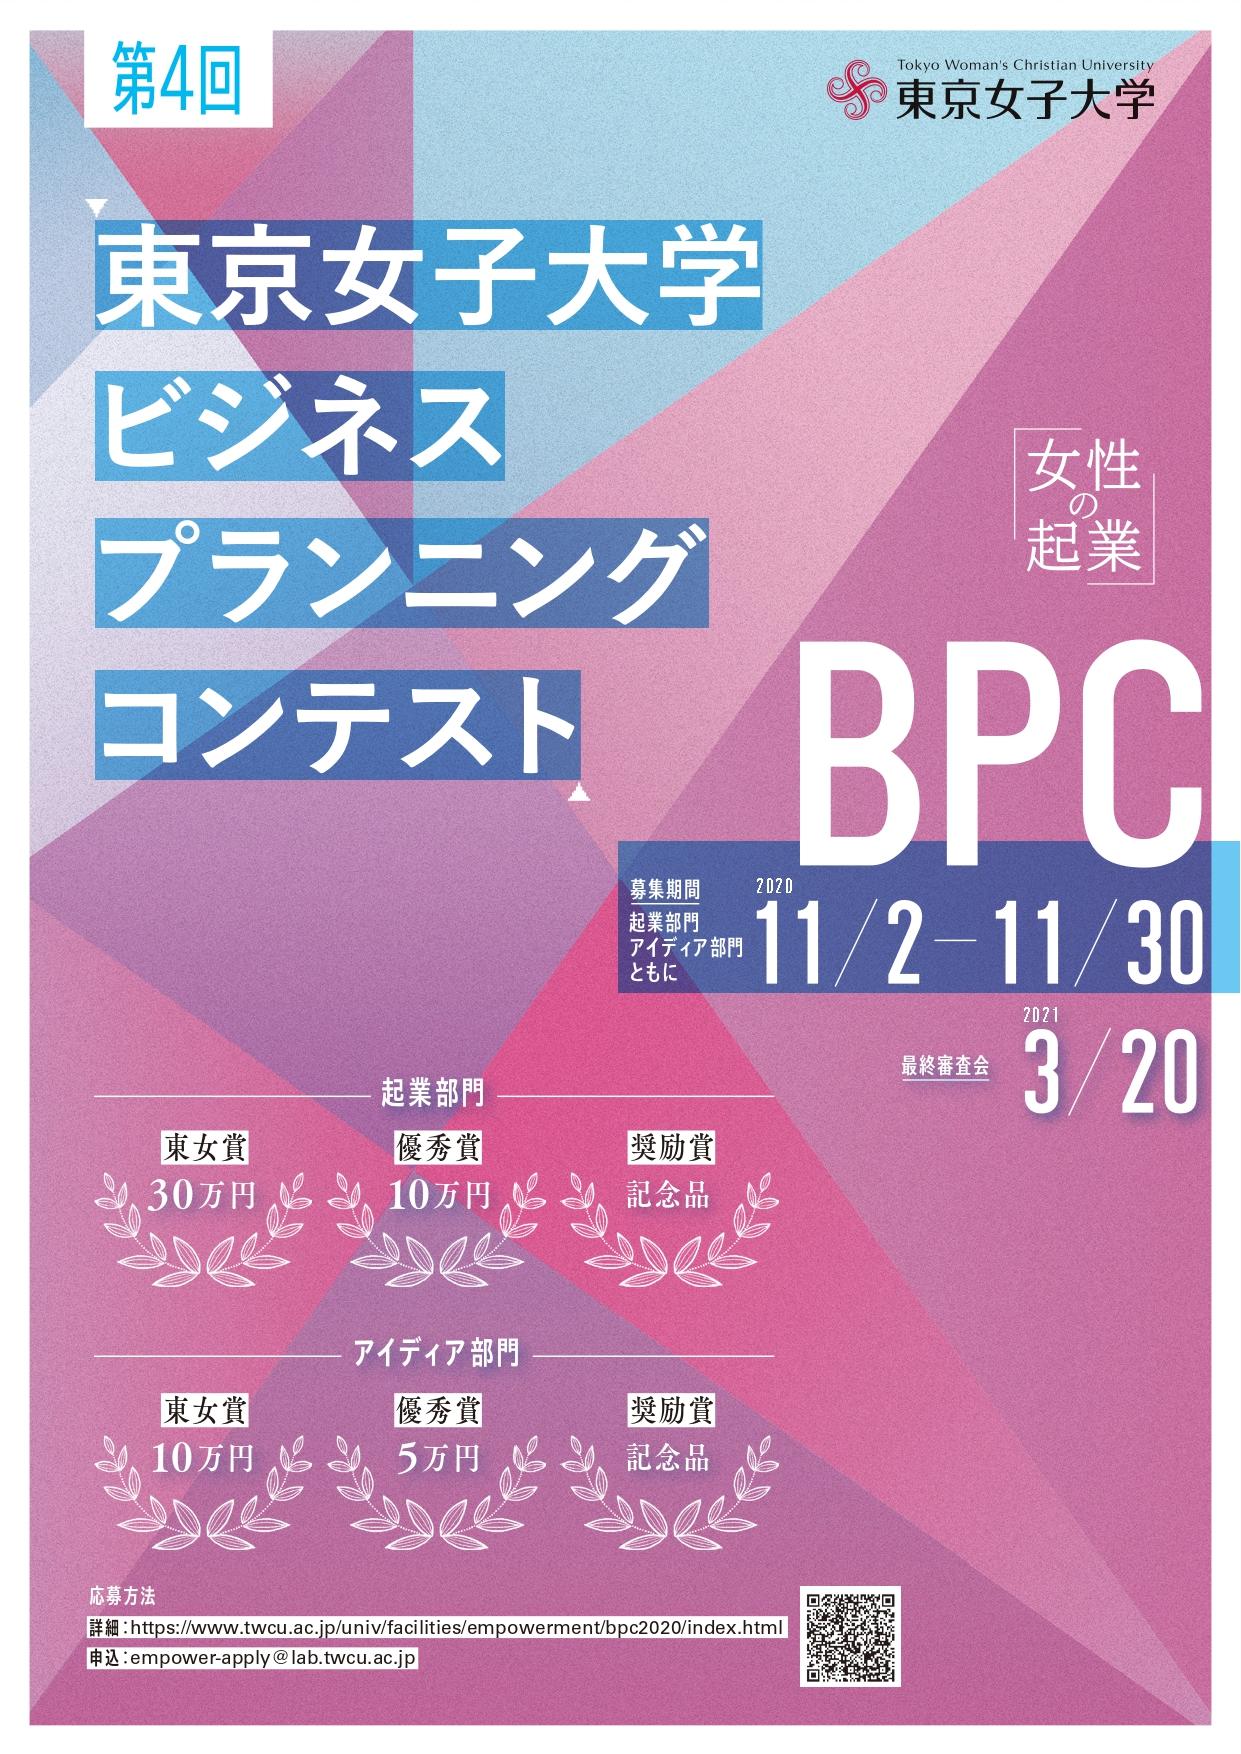 東京女子大学が第4回「ビジネス・プランニング・コンテスト」を開催 -- 高校生以上の女性を対象とした起業プランコンテスト